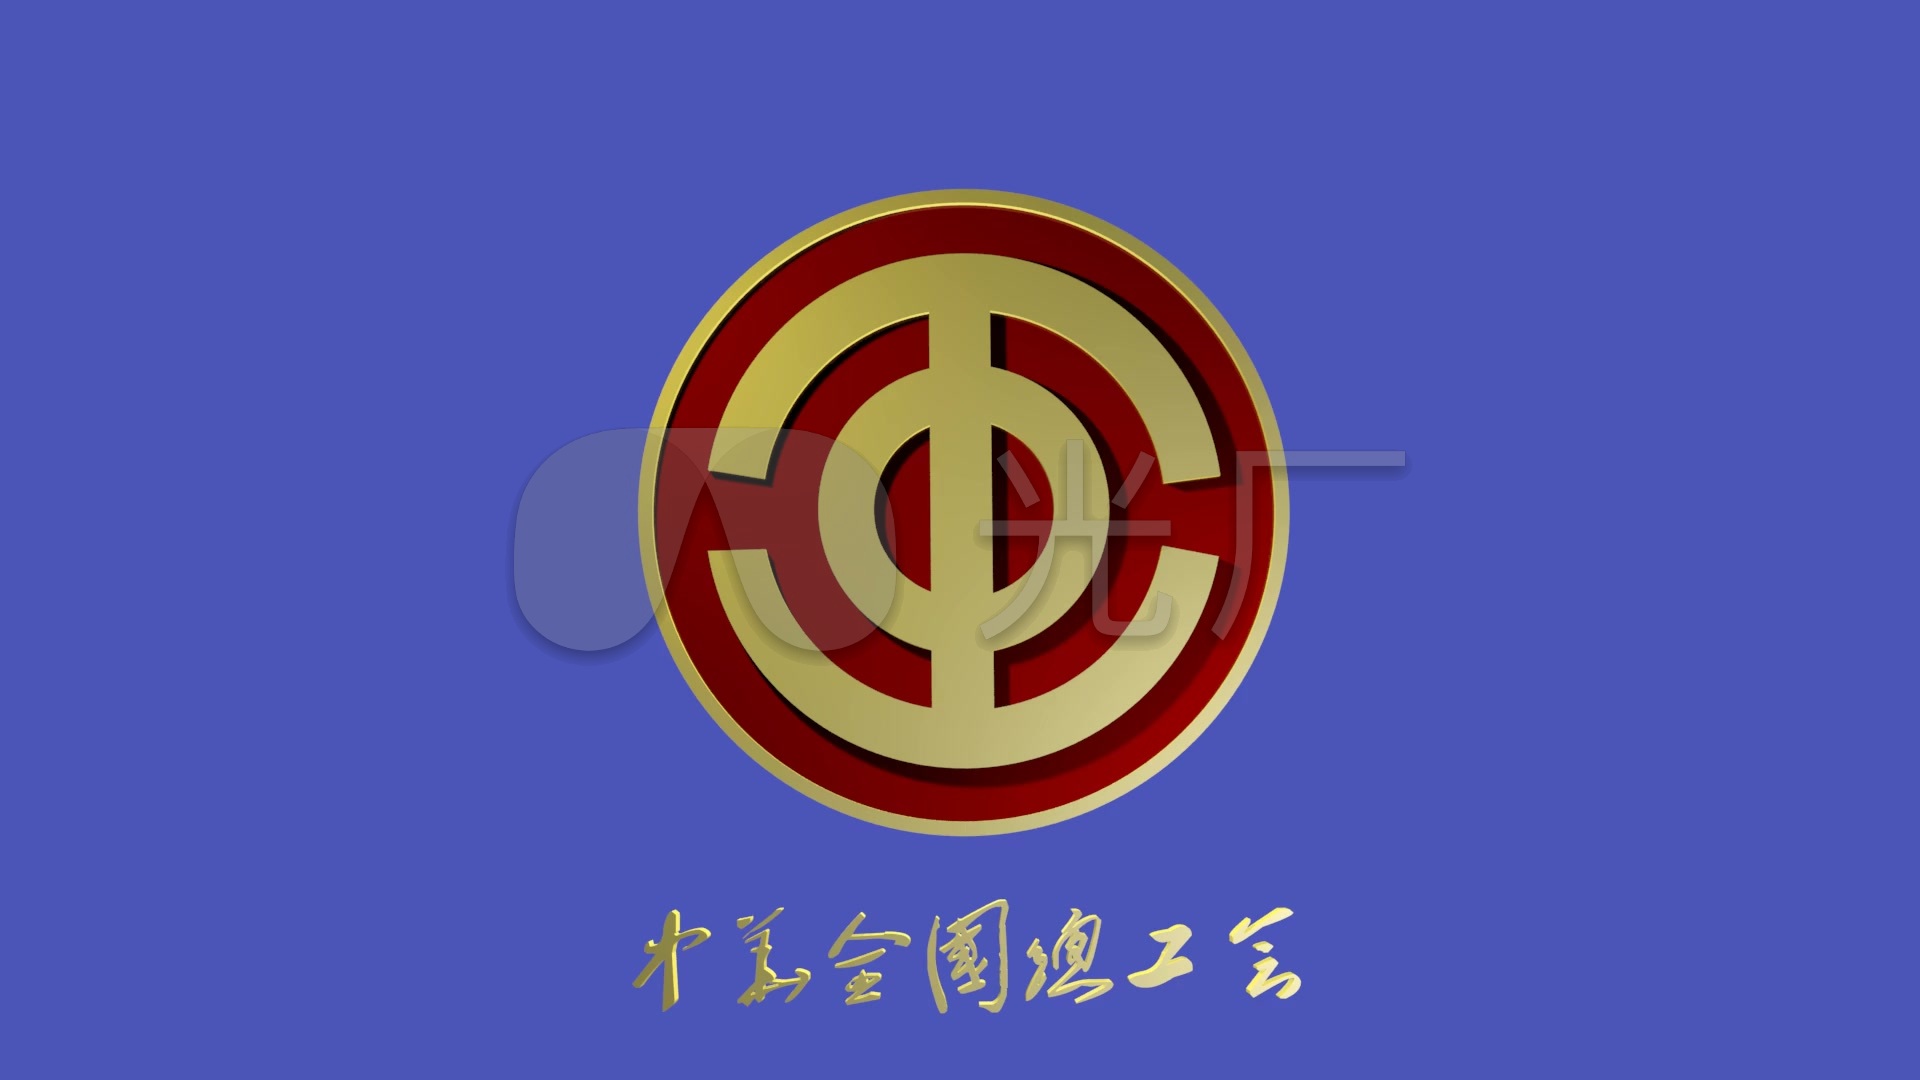 中华全国总工会会徽素材(可抠像)1_1920x1080_高清视频素材下载(编号